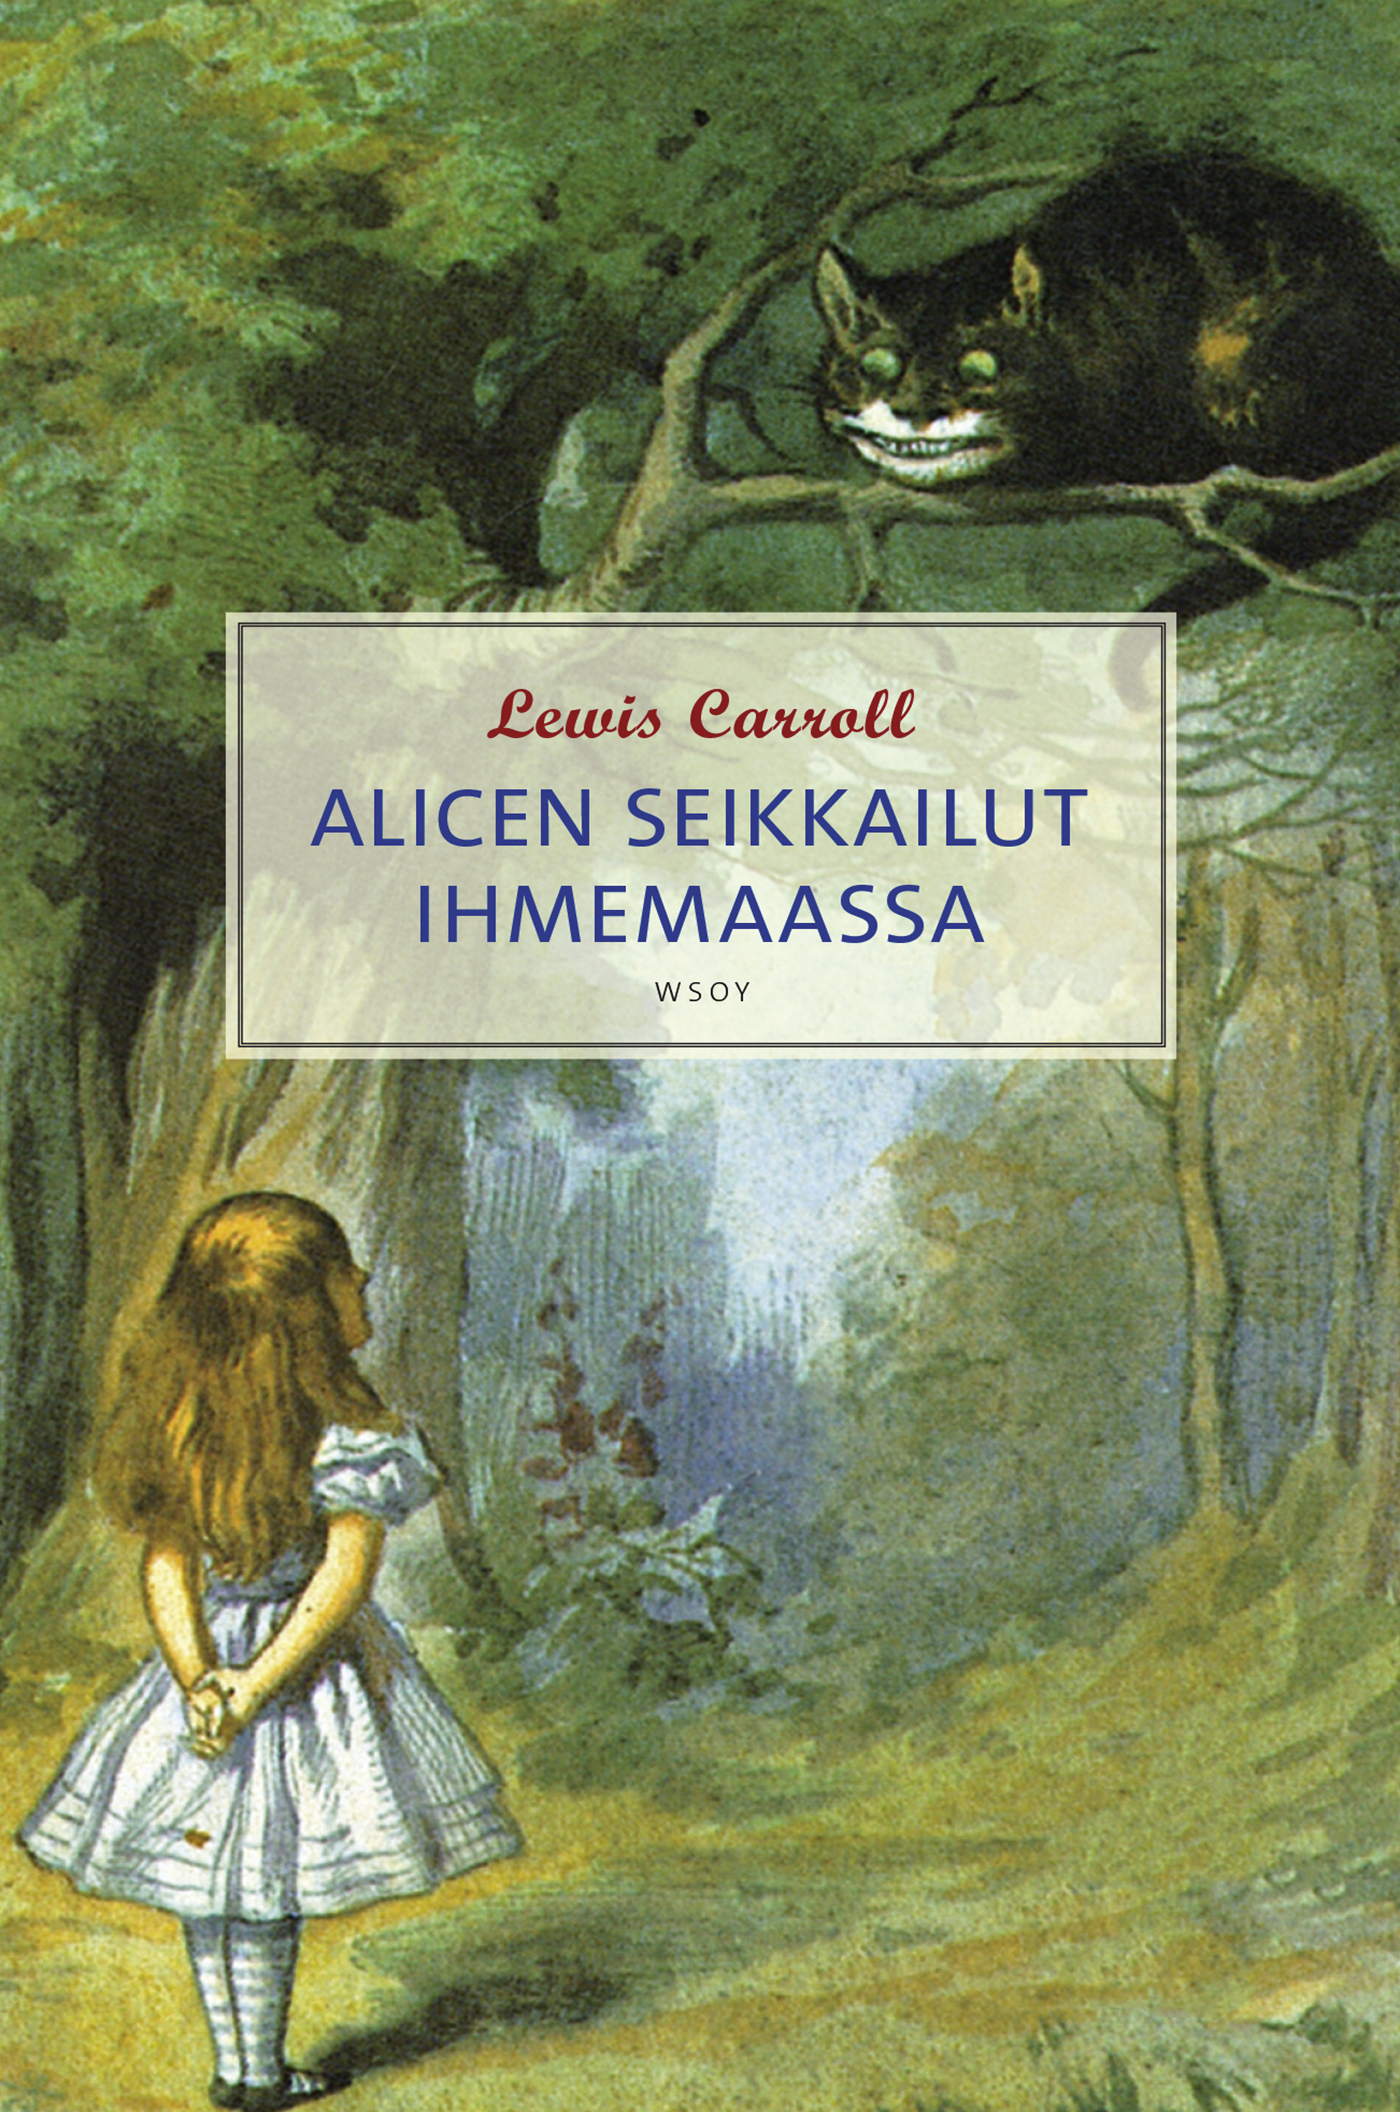 Carroll, Lewis - Alicen seikkailut ihmemaassa, ebook